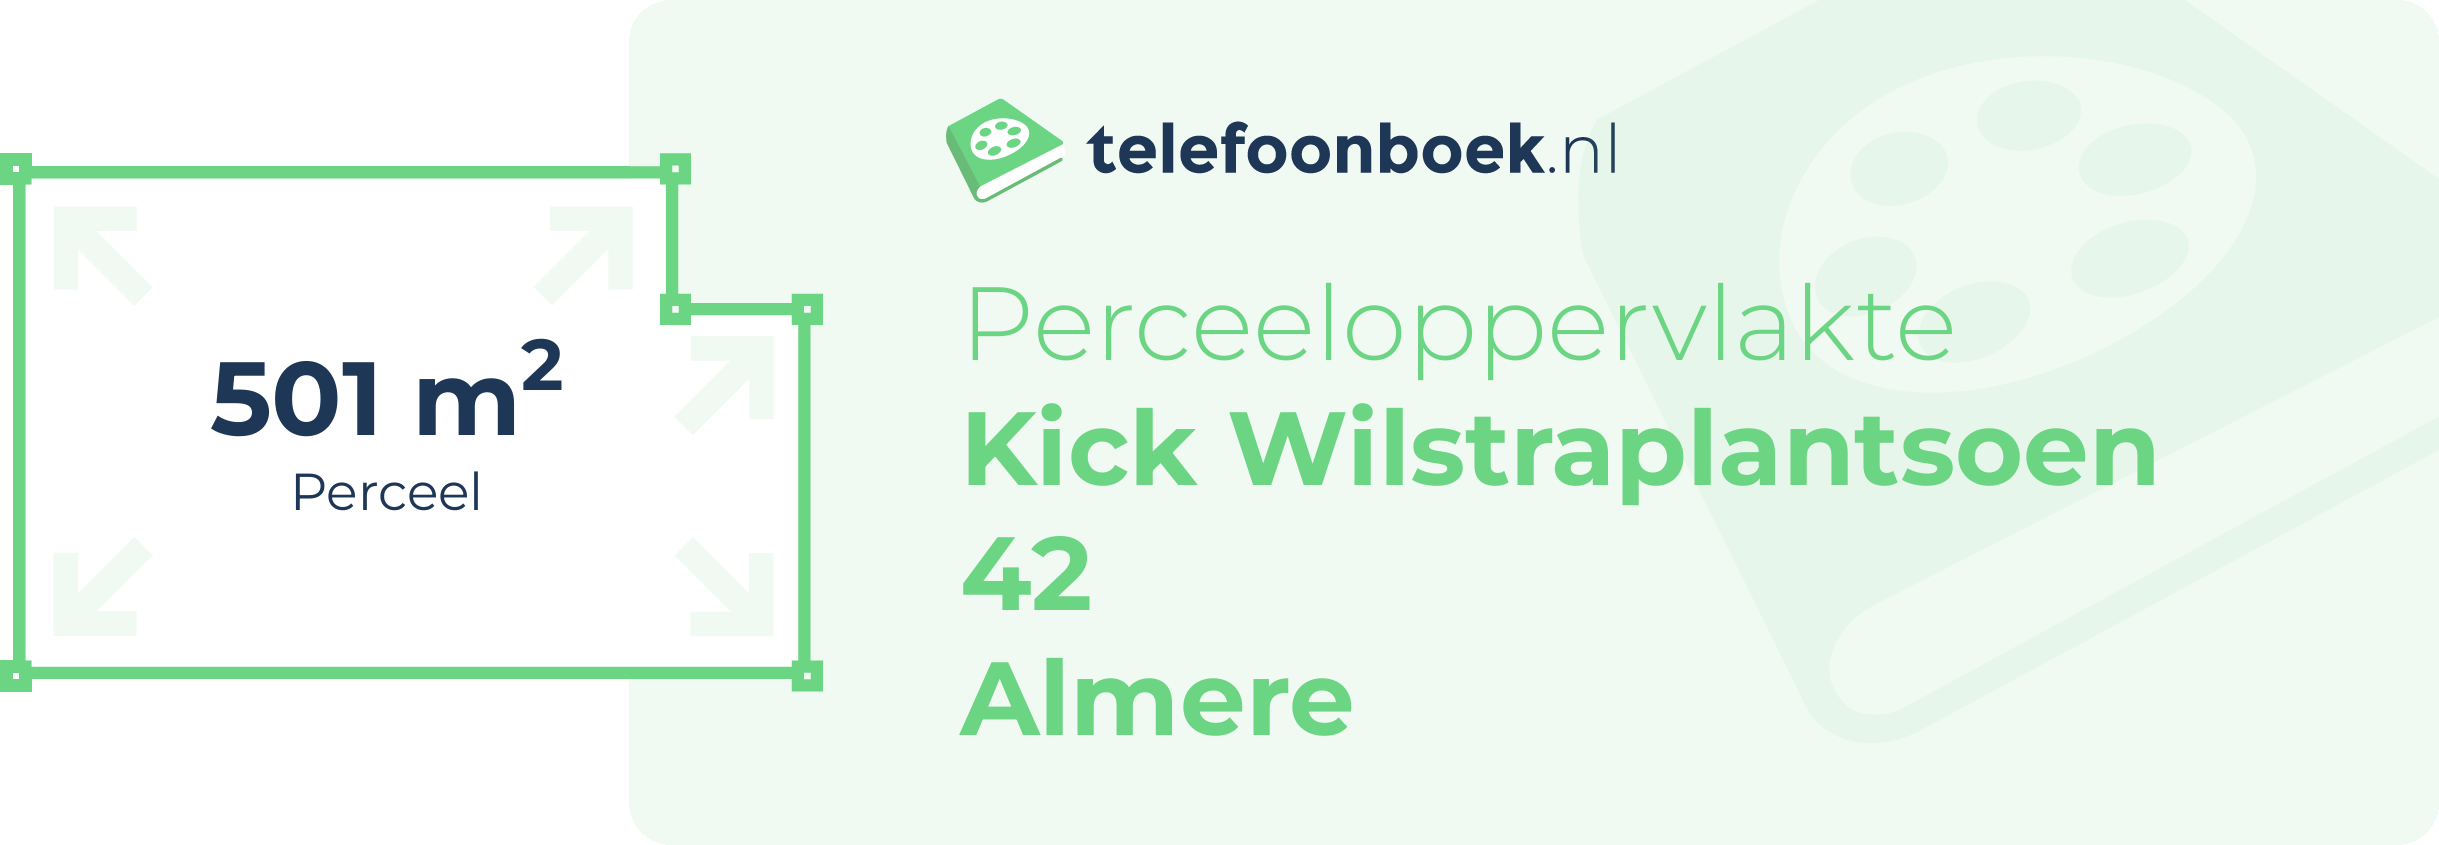 Perceeloppervlakte Kick Wilstraplantsoen 42 Almere